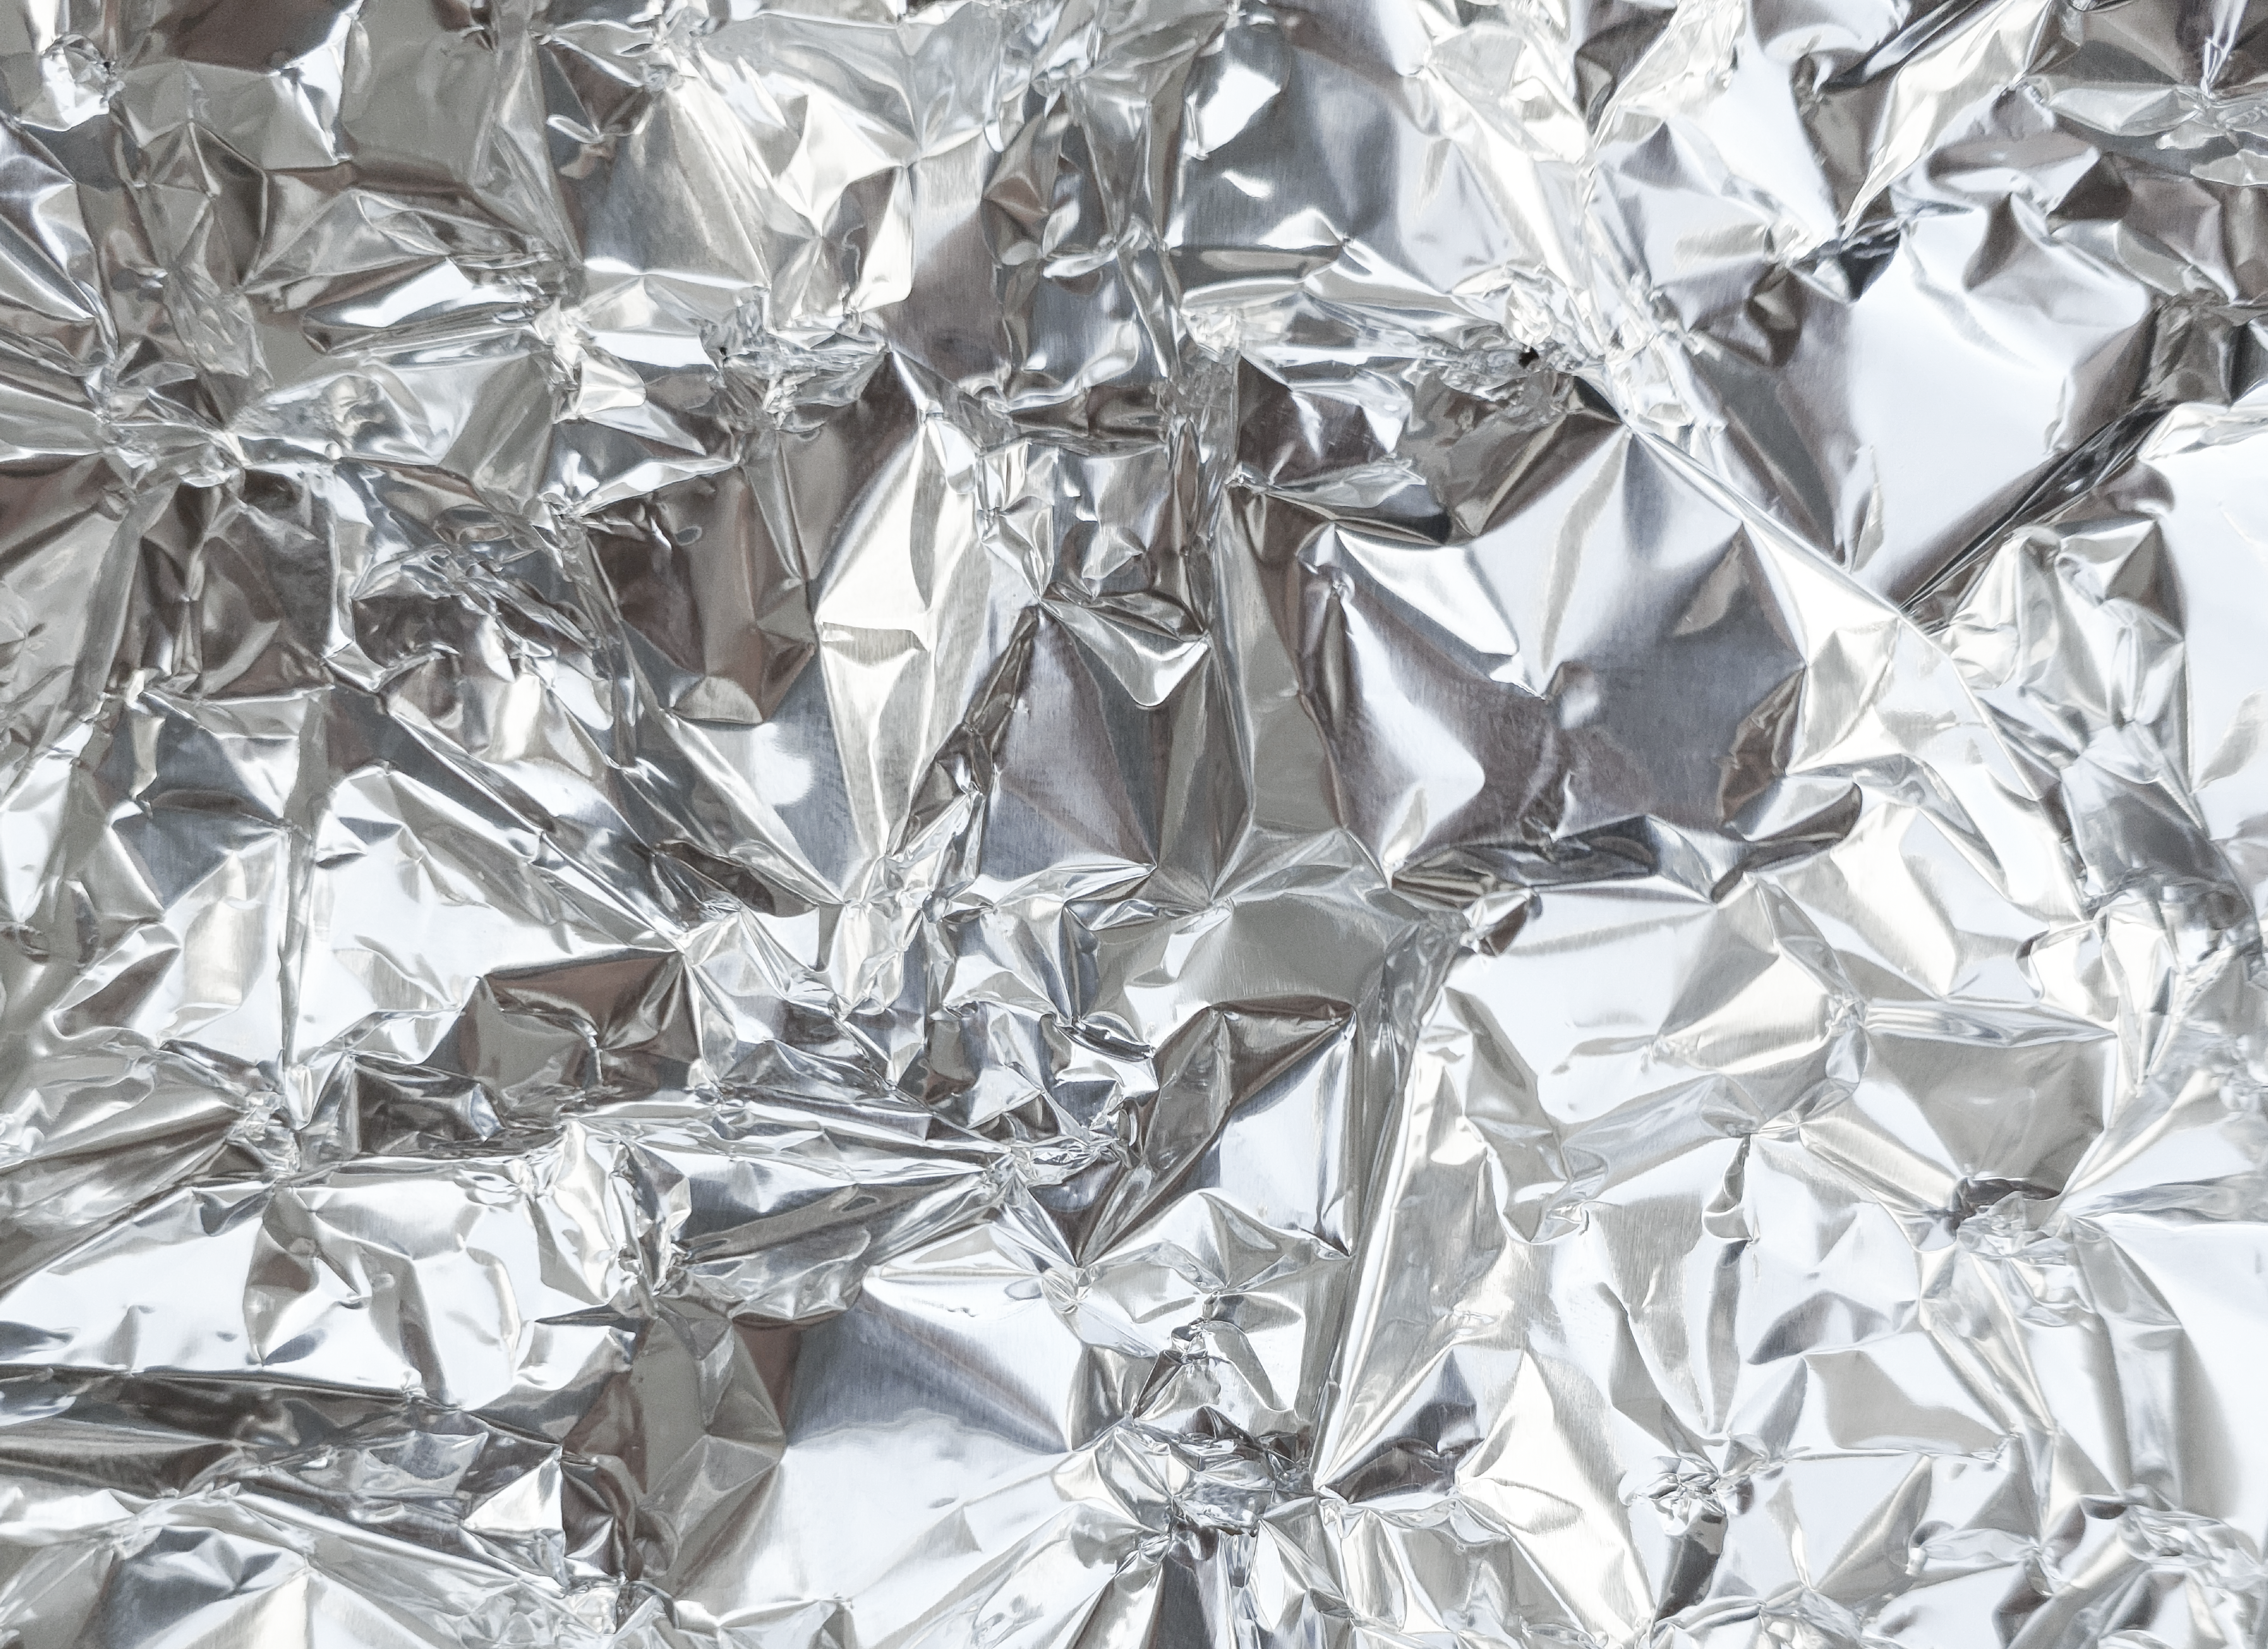  How Do You Dissolve Aluminum Foil 